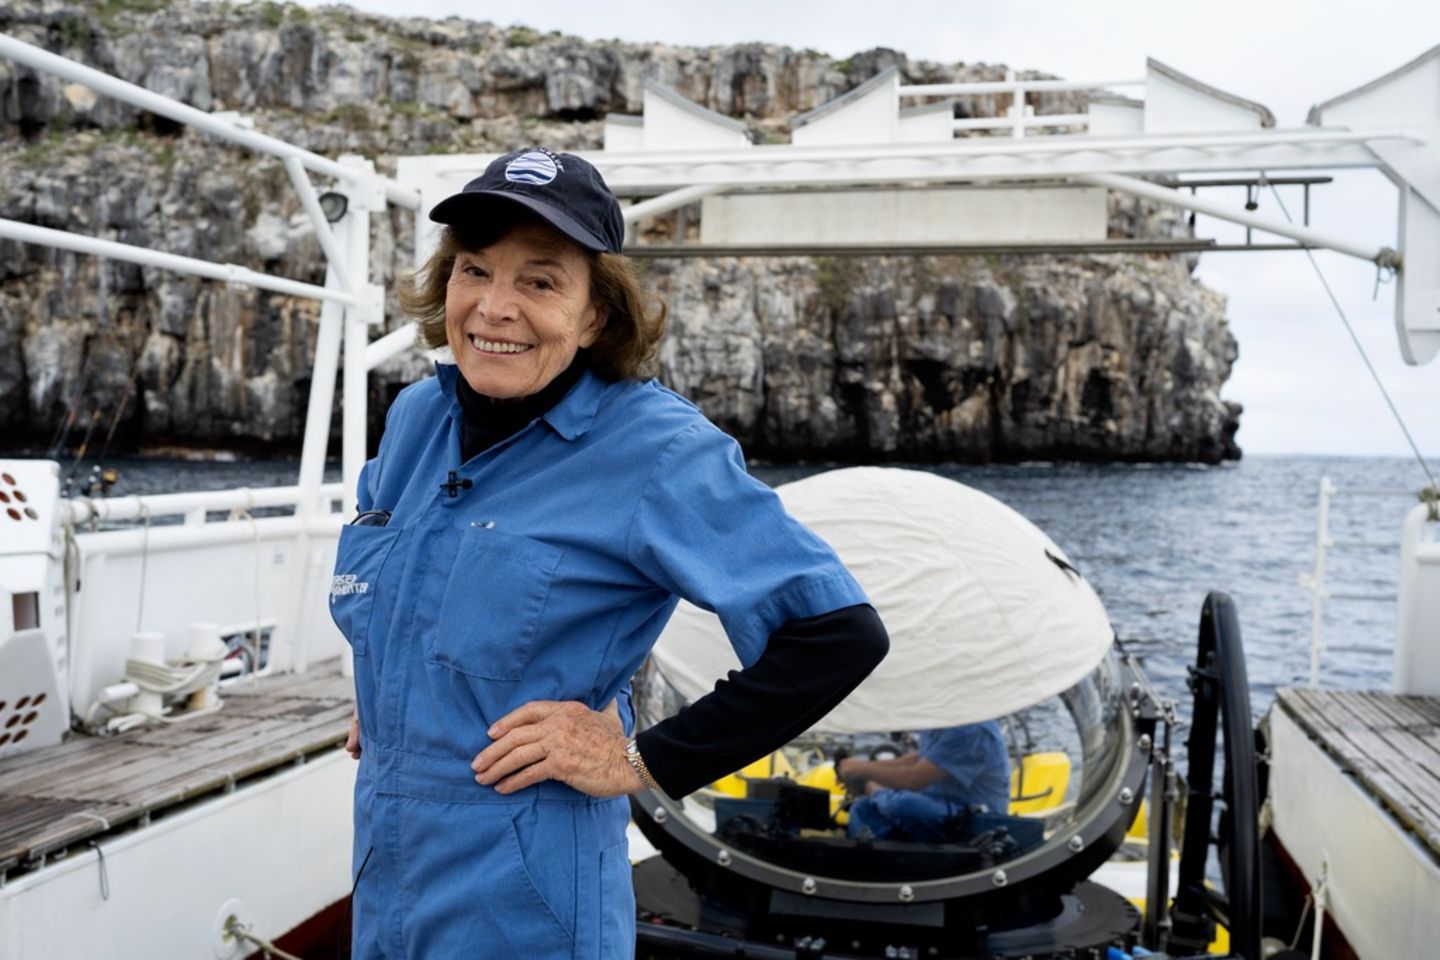 Die 87-jährige Meeresbiologin Sylvia Earle steht mit einem blauen Overall auf einem Boot